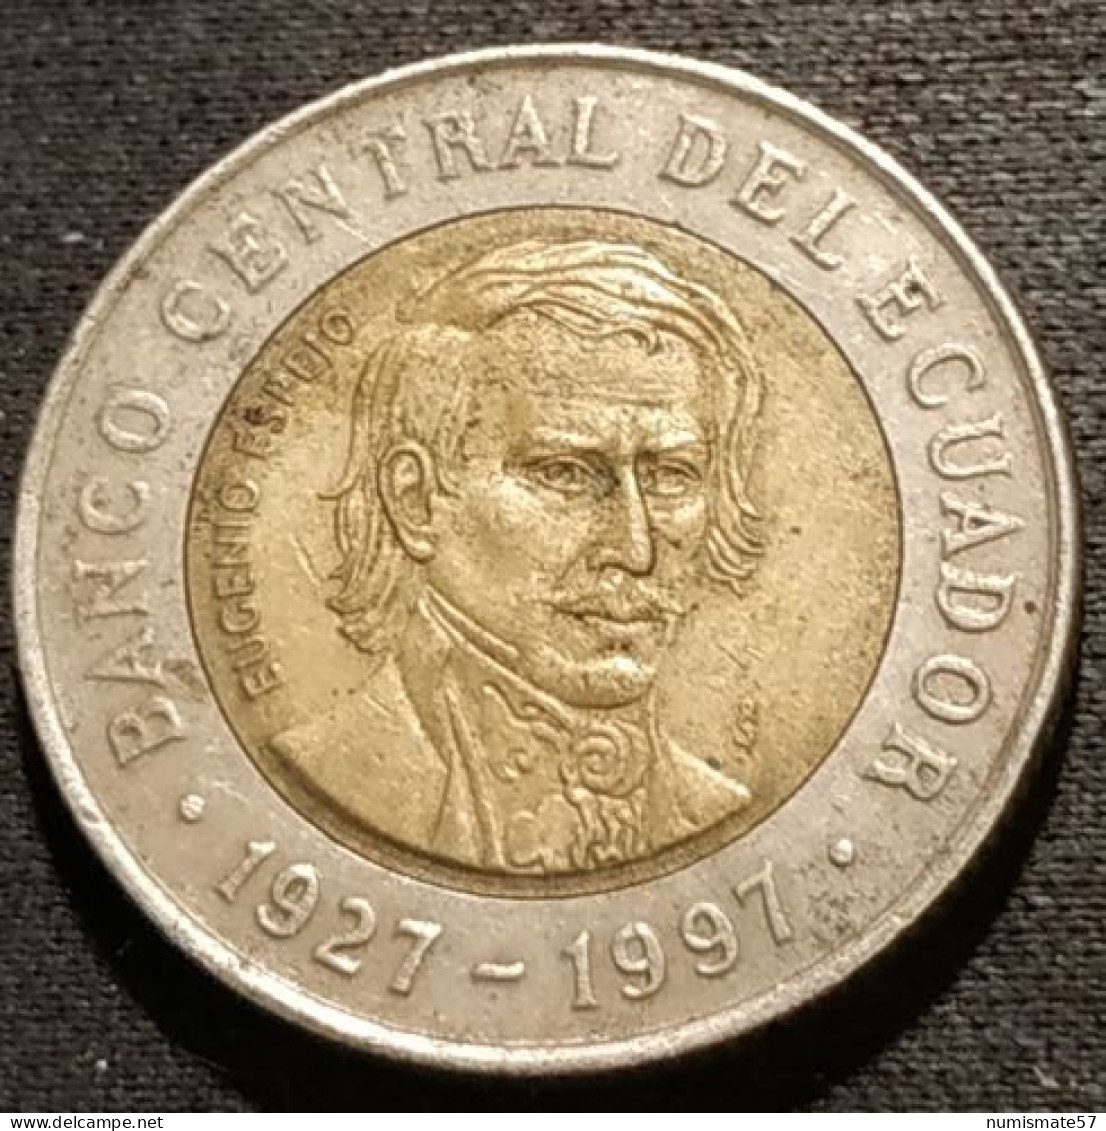 EQUATEUR - EQUATOR - 1000 SUCRES 1997 - KM 103 - Ecuador - EUGENIO ESPEJO - 70ème Anniversaire De La Banque Centrale - Equateur